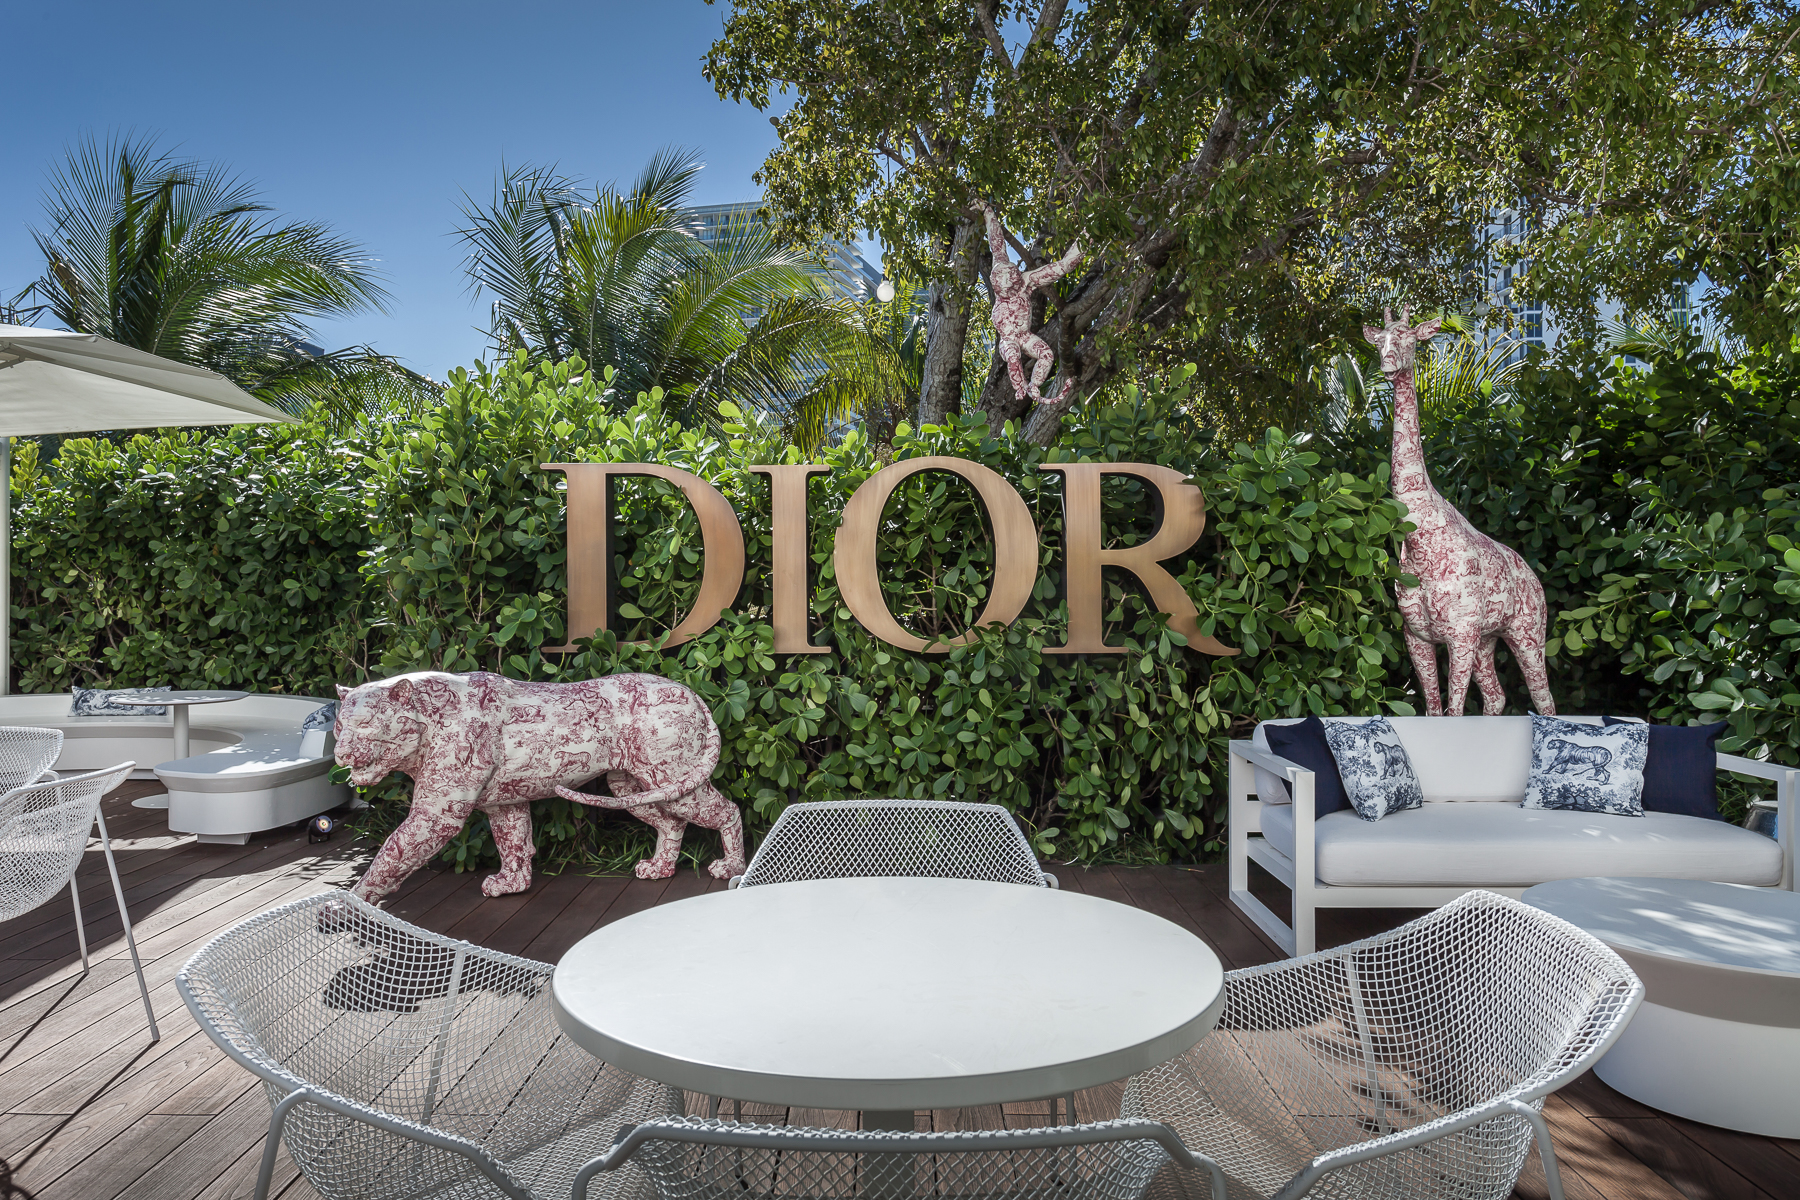 Dior Café